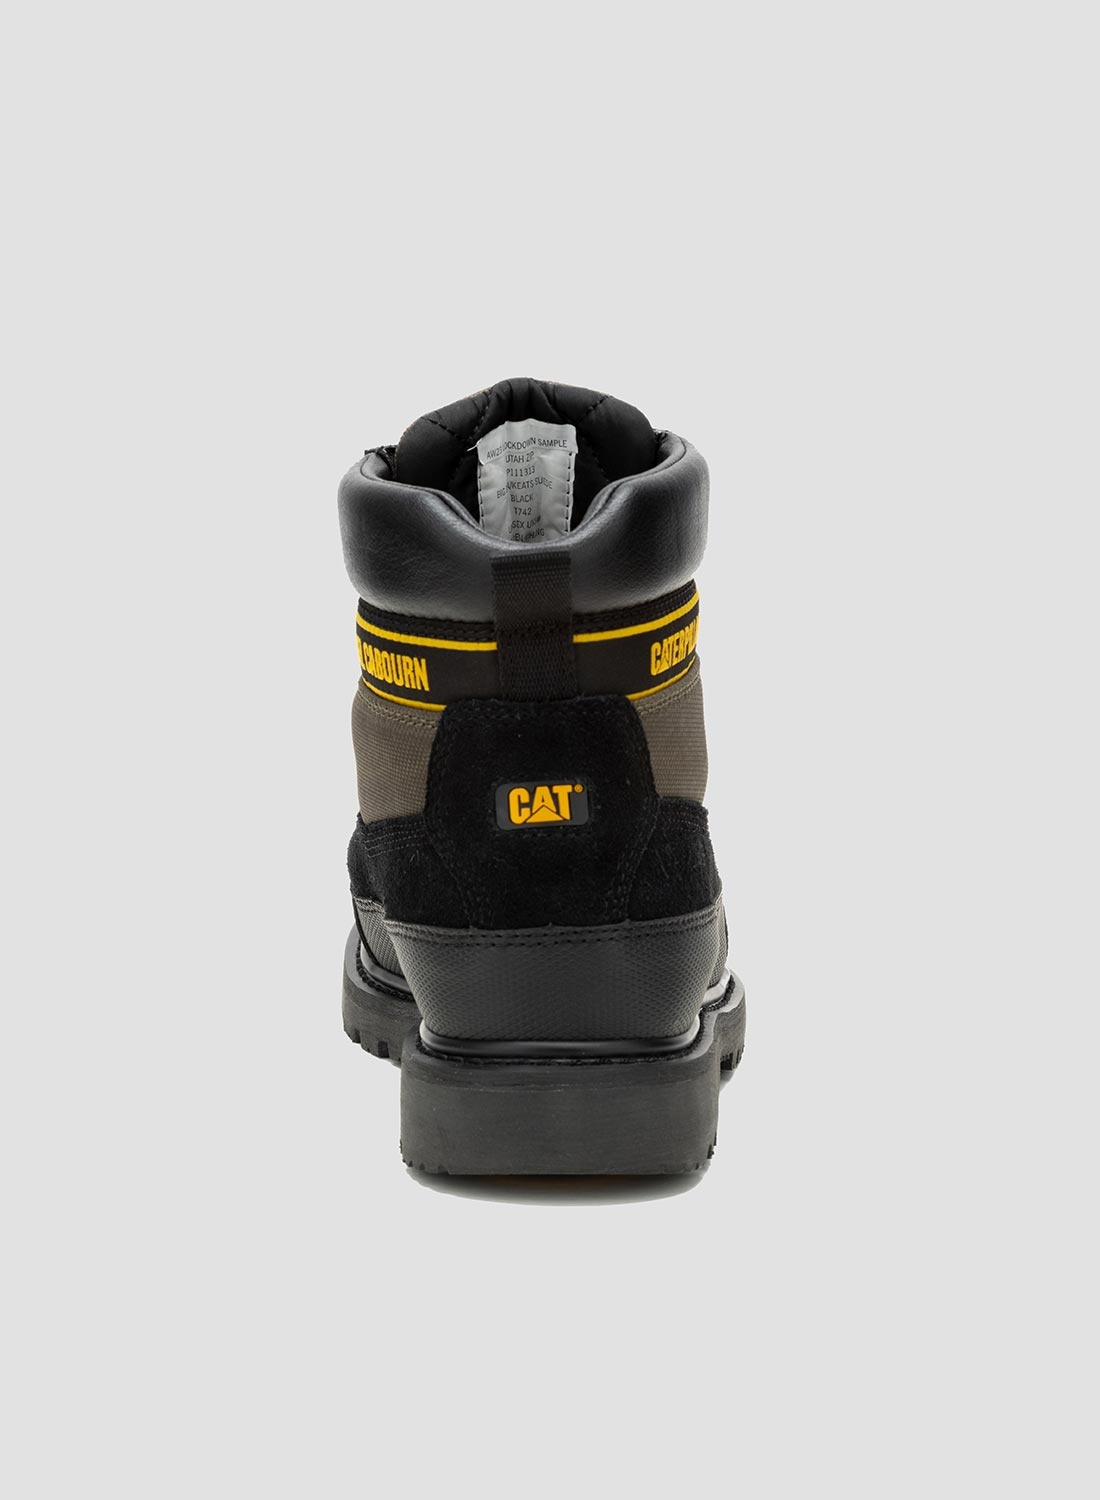 CAT Footwear x Nigel Cabourn Utah Zip in Black Olive - 7